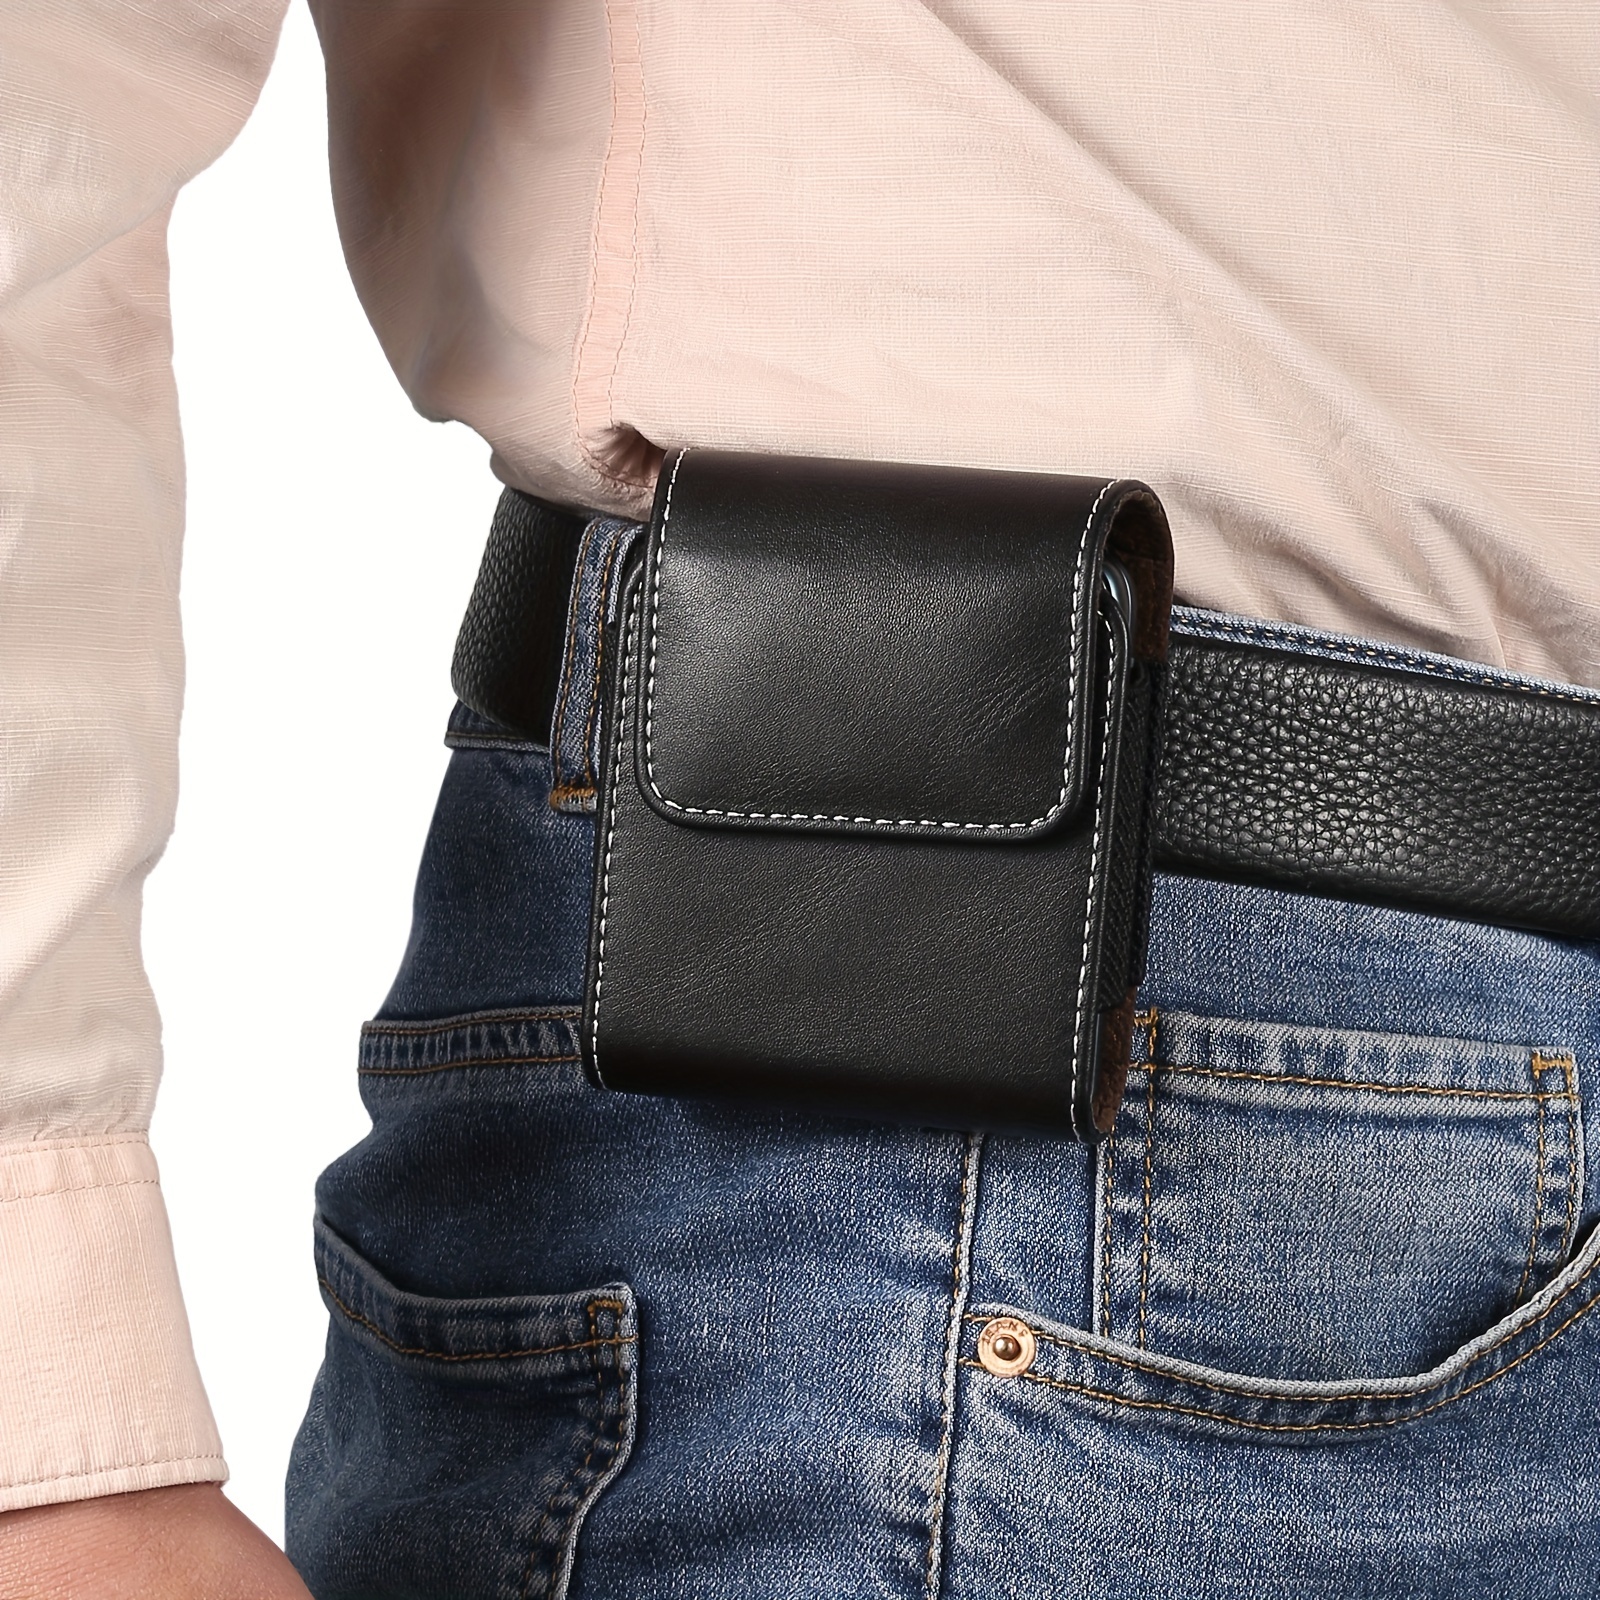 Cinturón de cuero para teléfono móvil, funda de cintura para